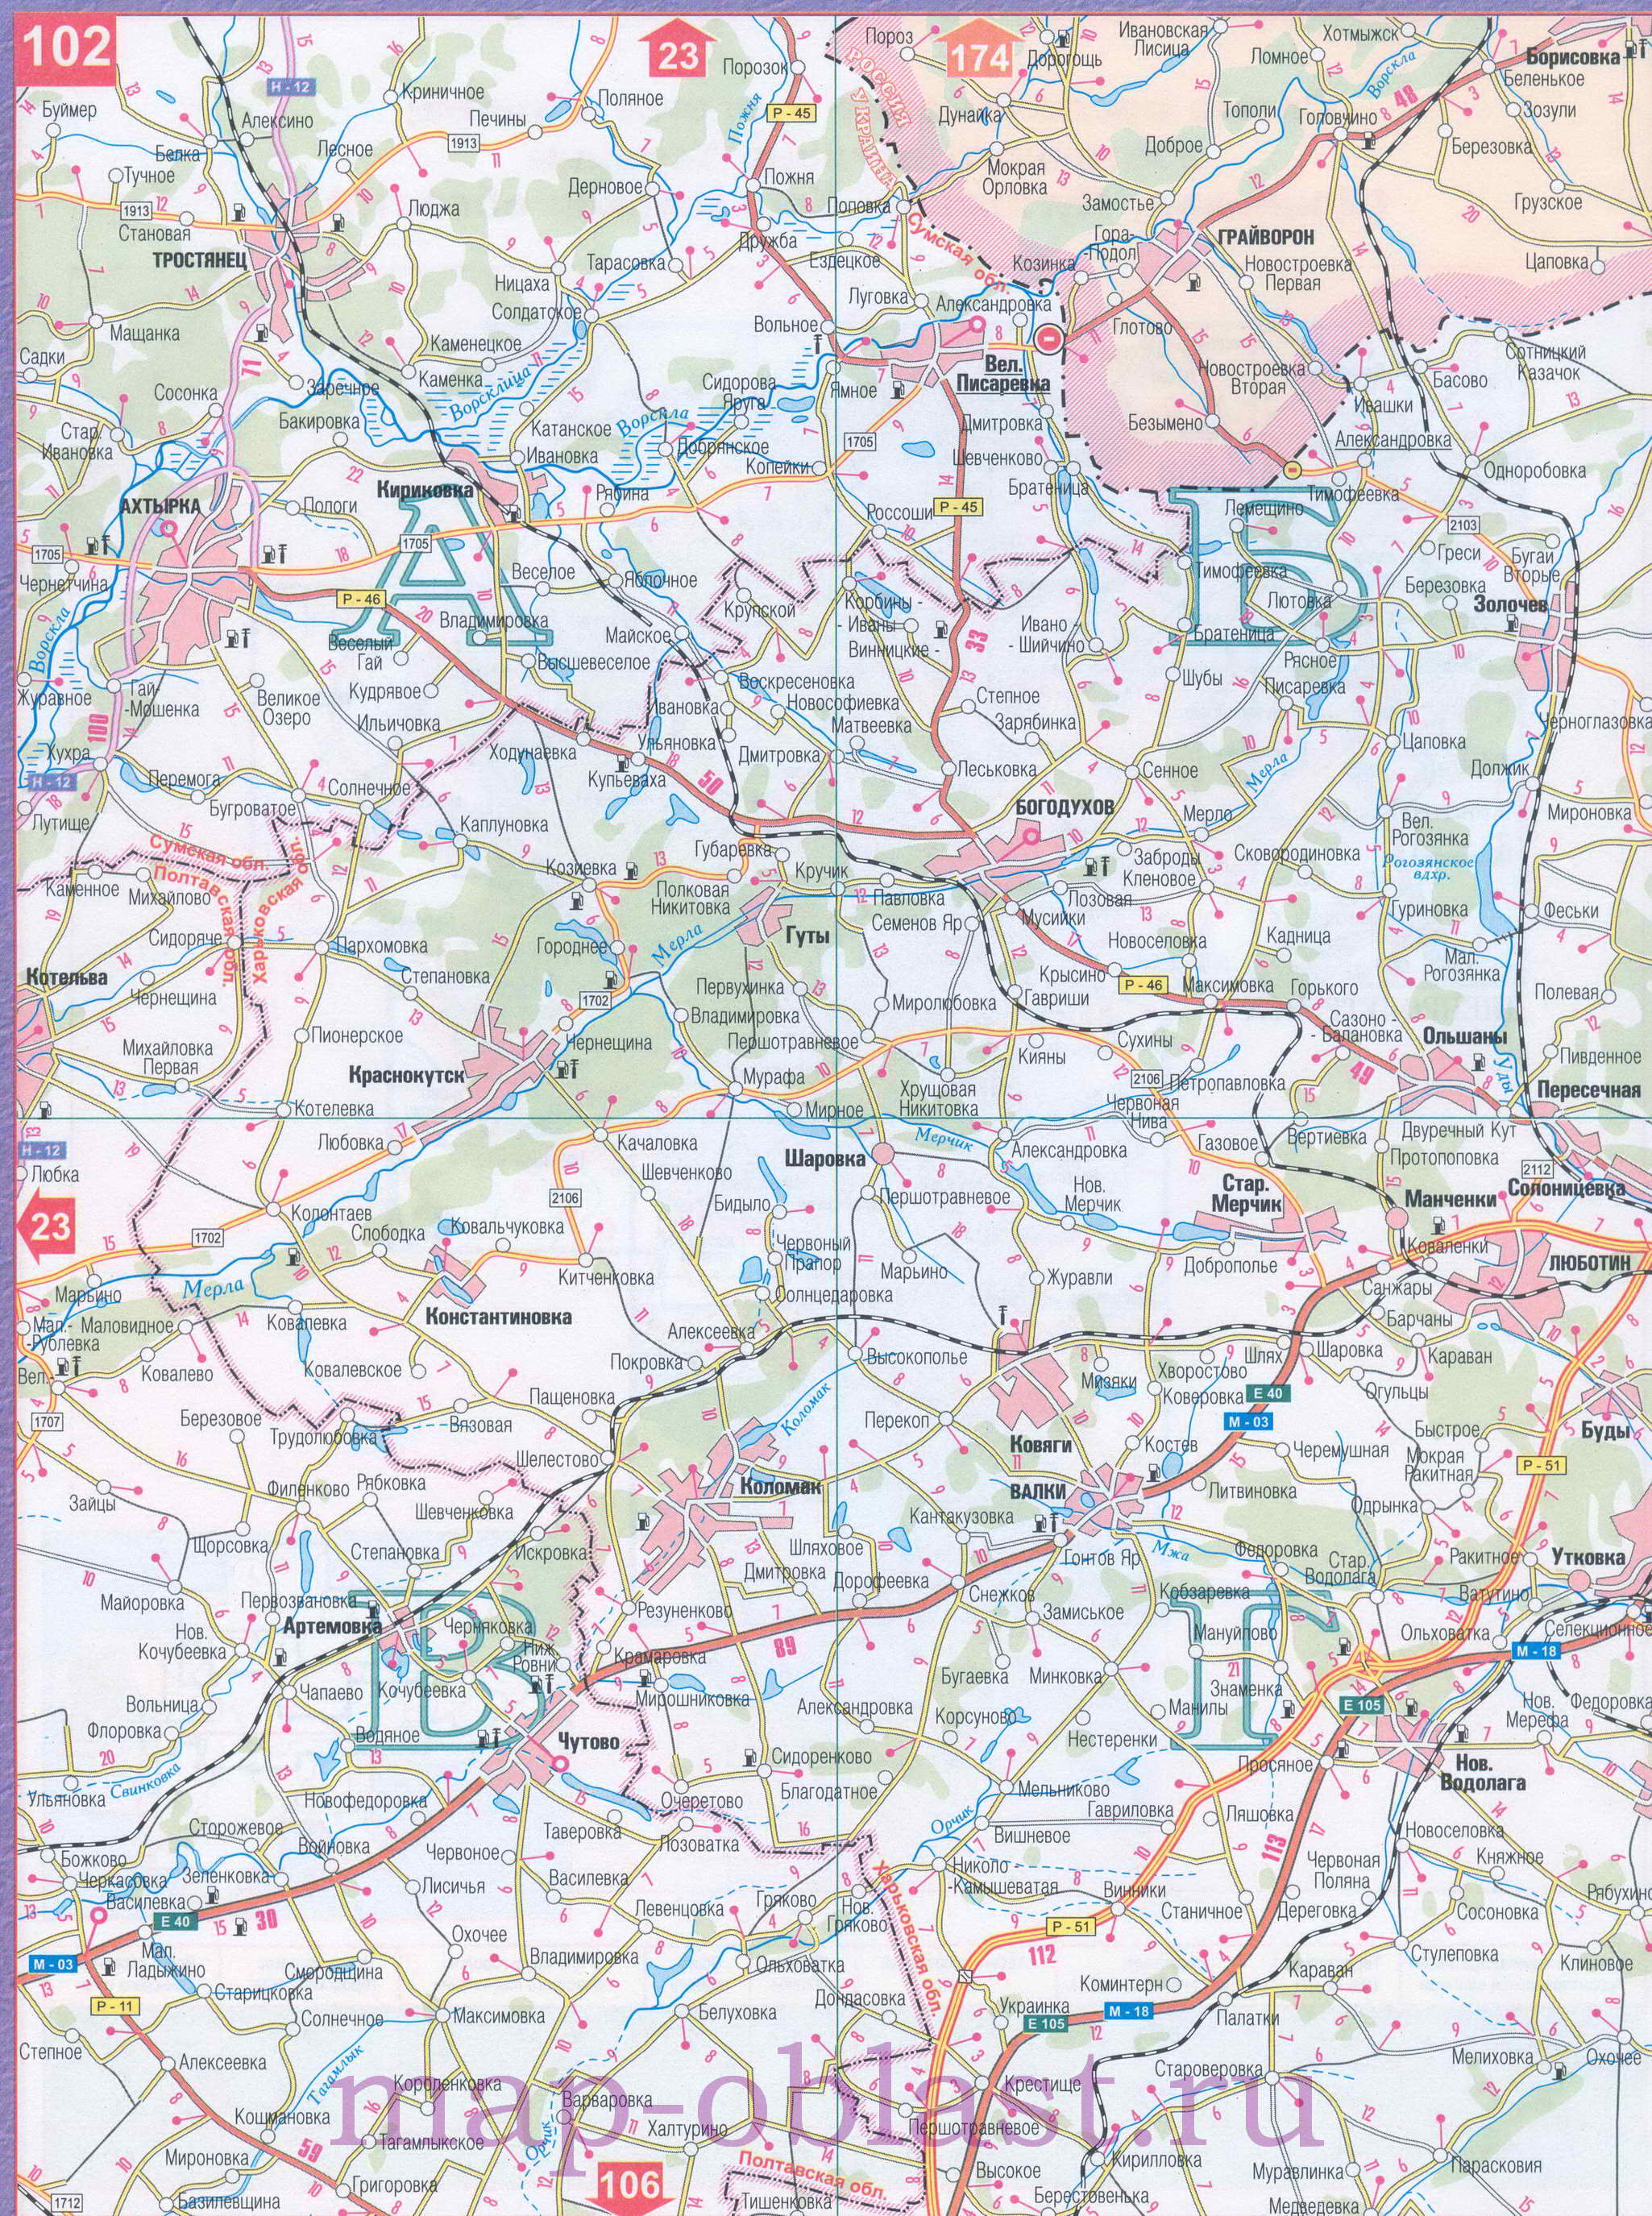 Автомобильная карта Восточной Украины - Харьковская область. Большая подробная карта Харьковской области, A0 - 